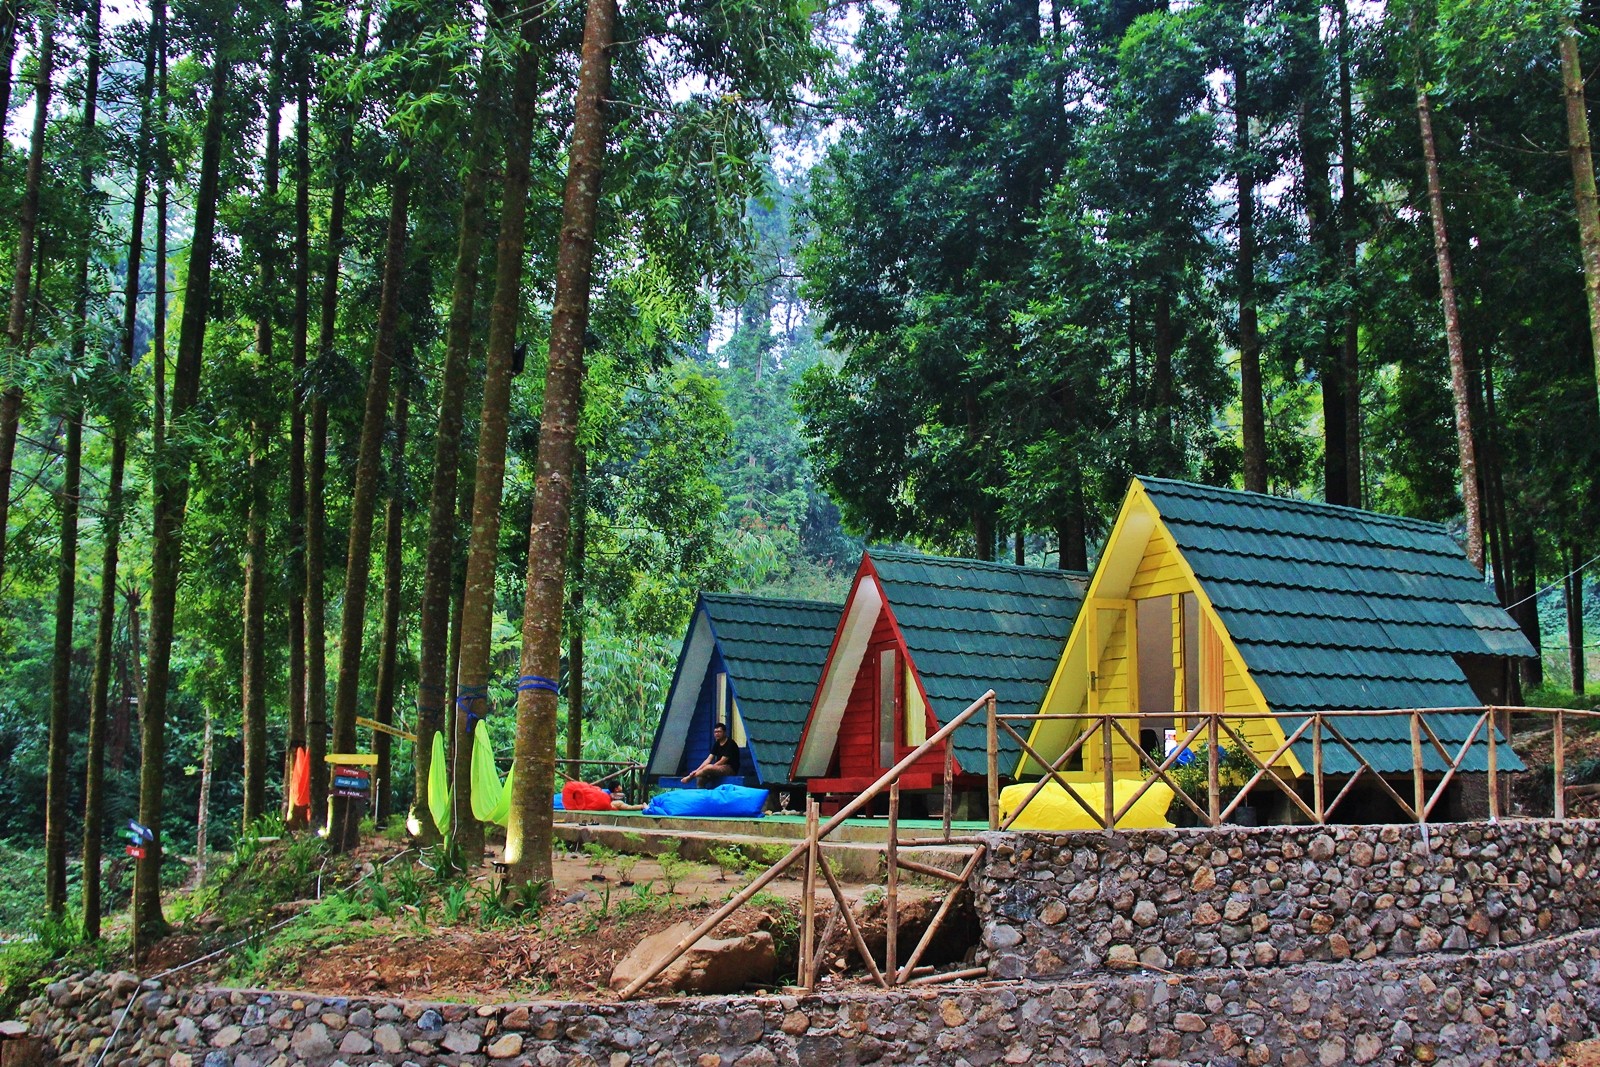 Nuansa Alam Citamiang, Camping Ground Asyik di Cisarua Bogor